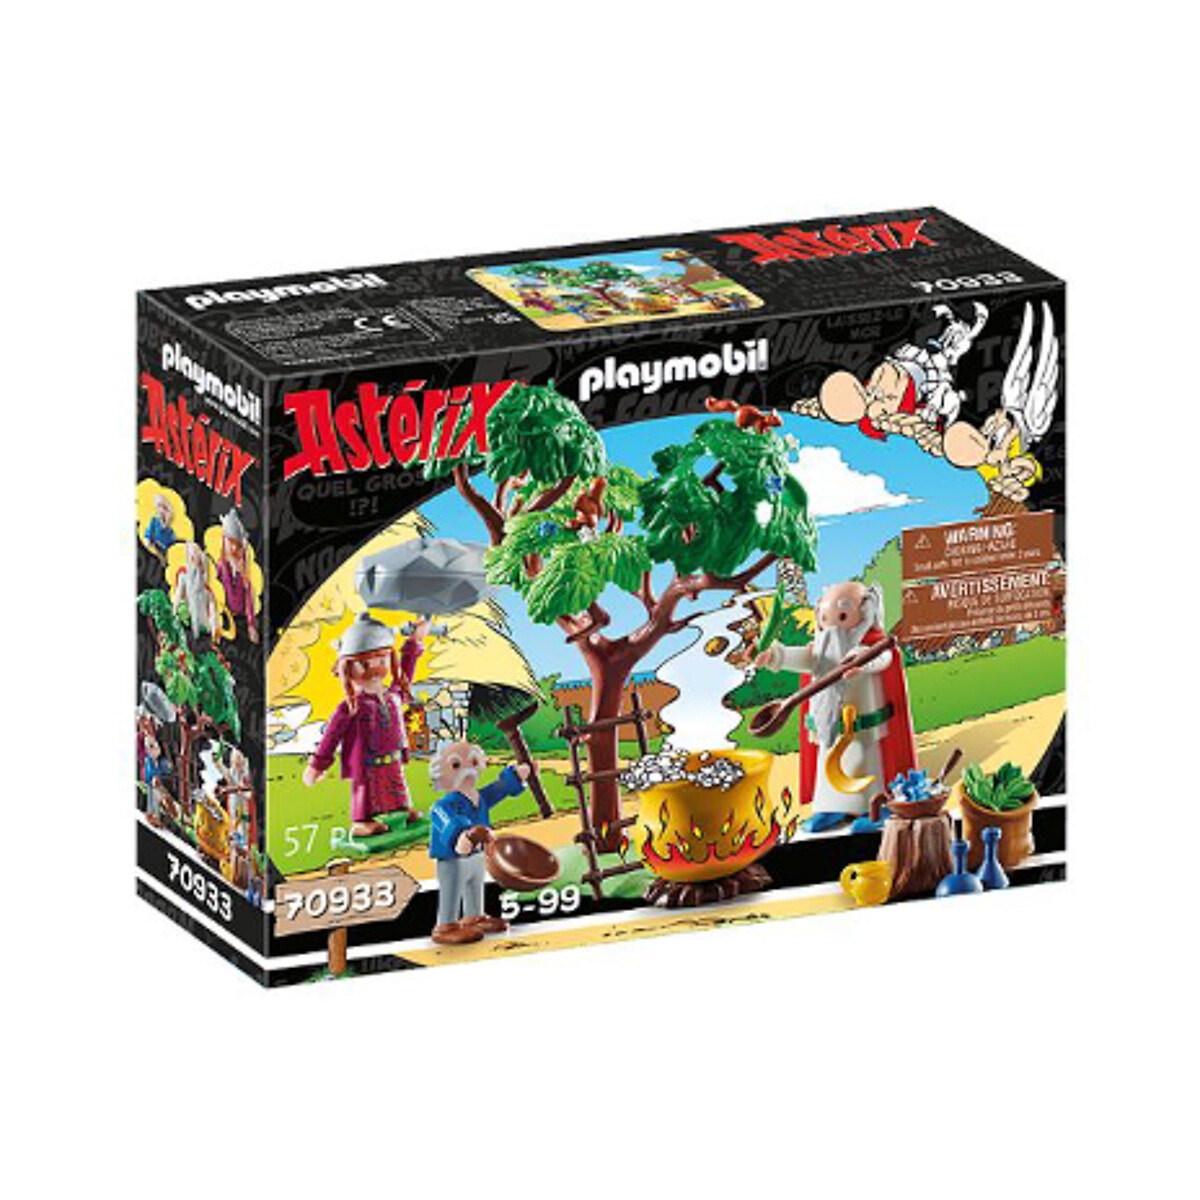 Astérix panoramix et le chaudron de potion magique multicolore Playmobil